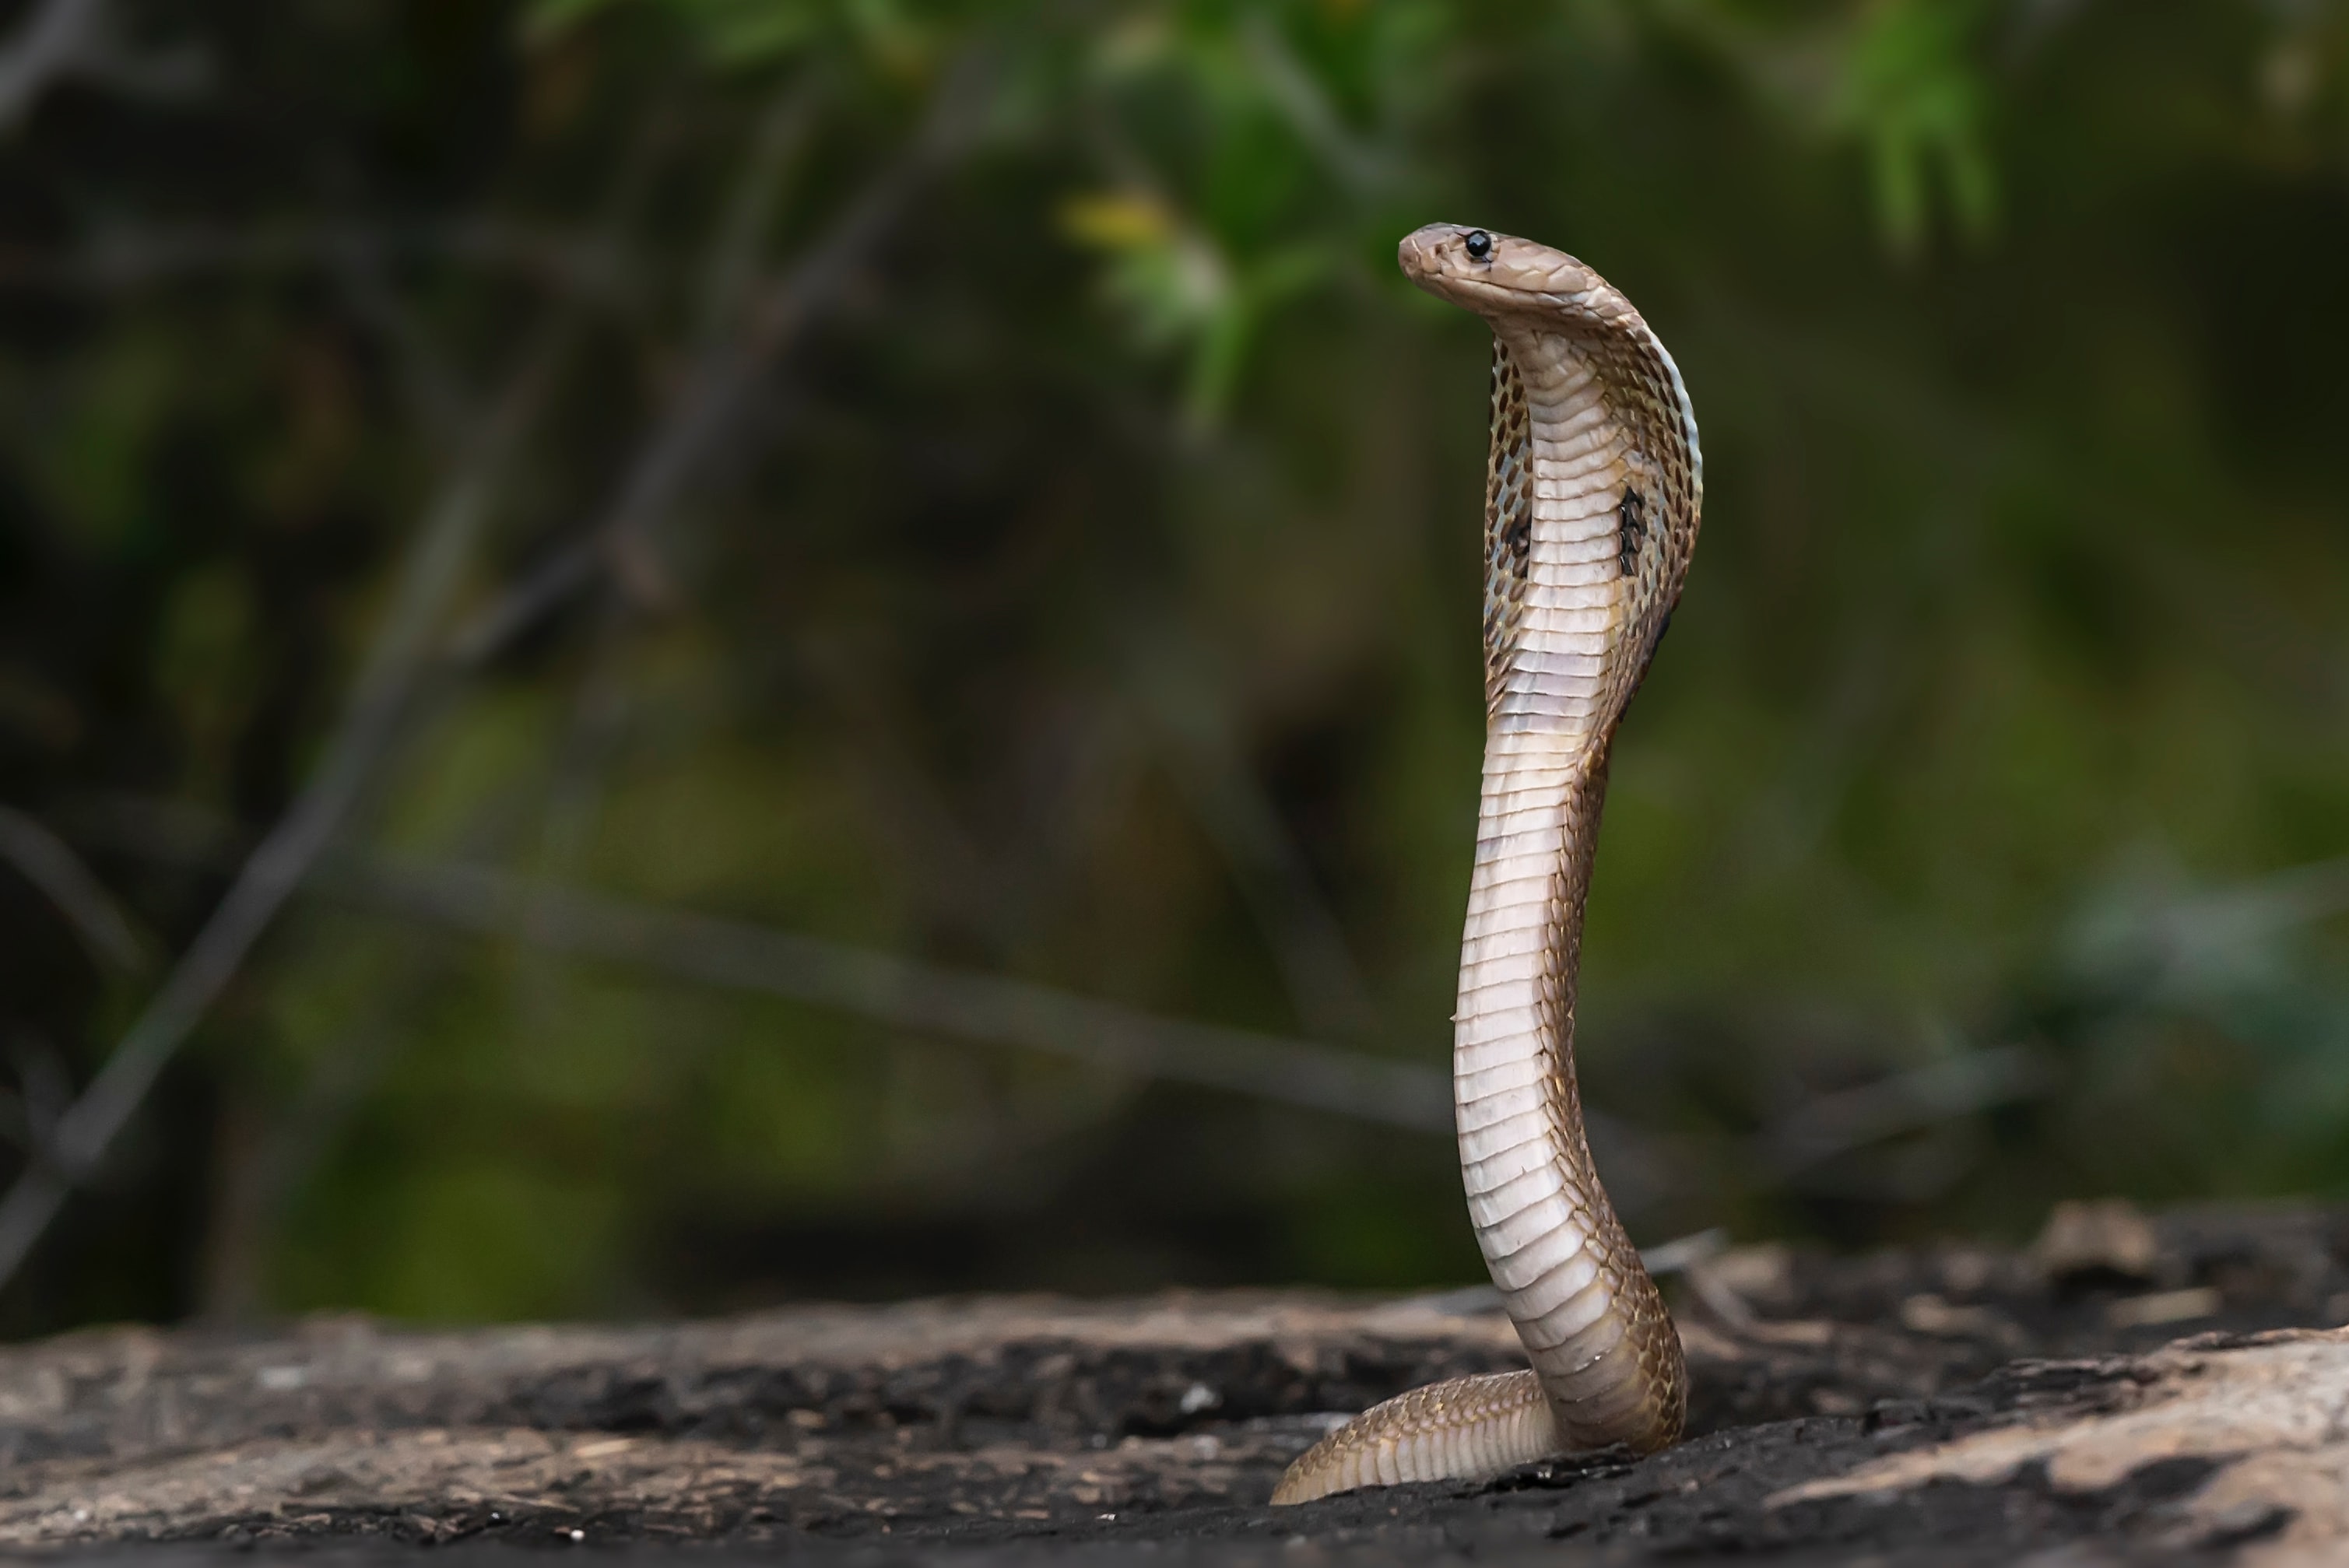 A venomous Cobra